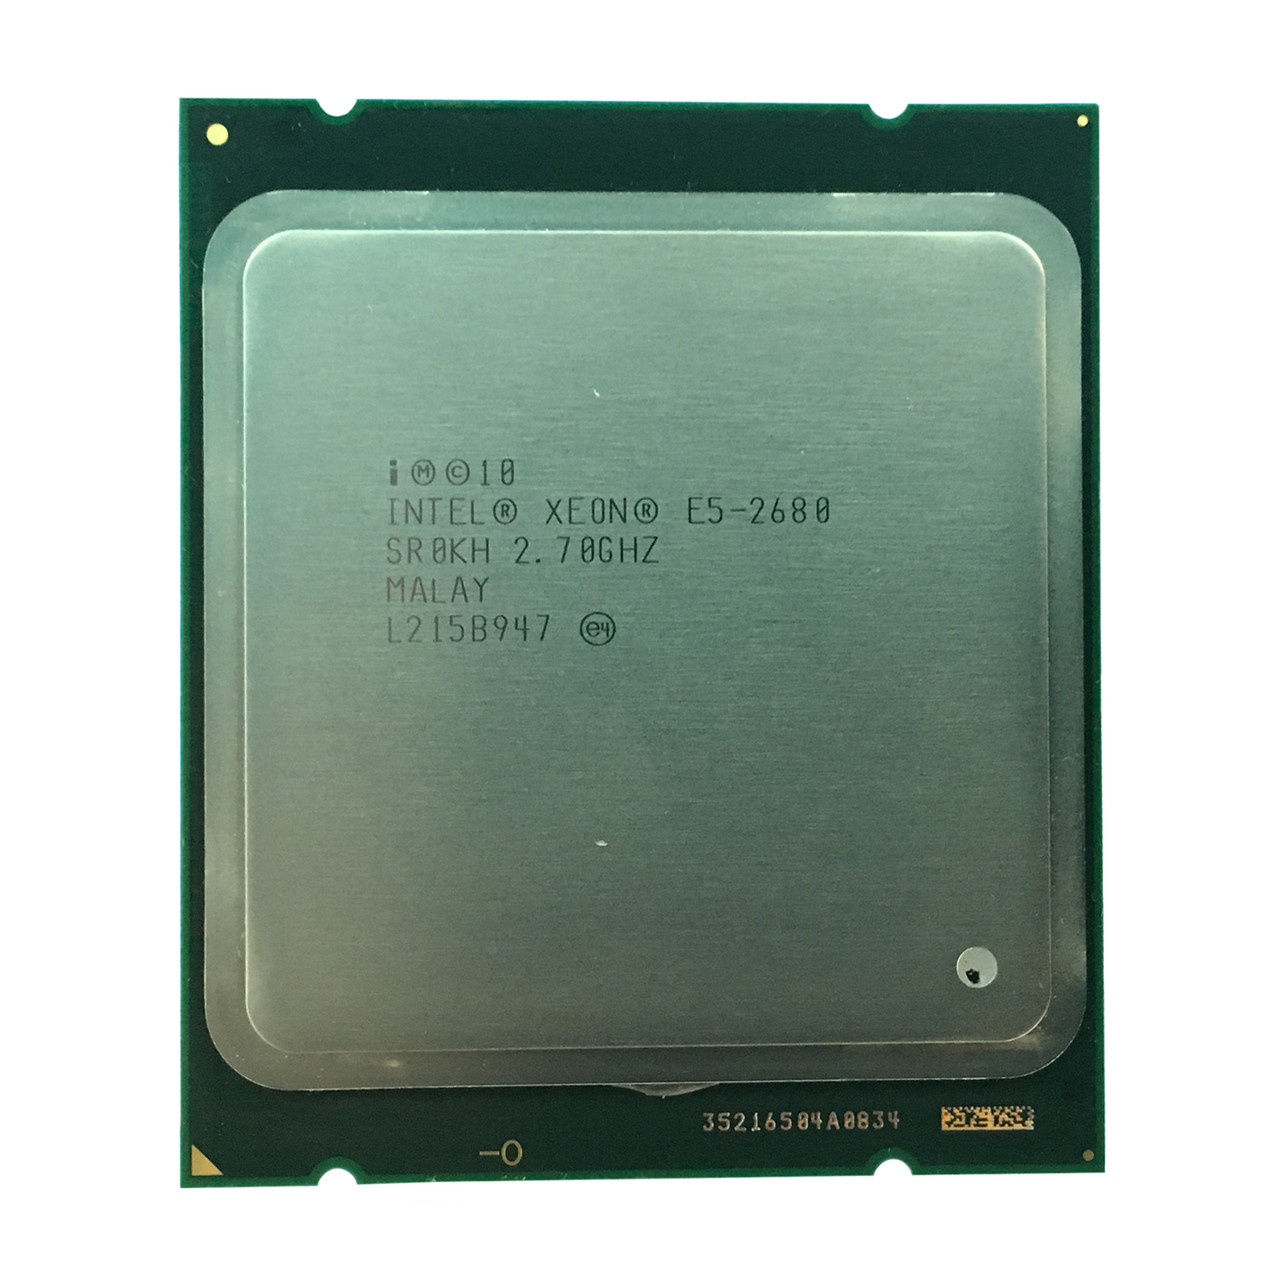 Dell 8GDG3 Xeon E5-2680 8C 2.70Ghz 20MB 8GTS Processor